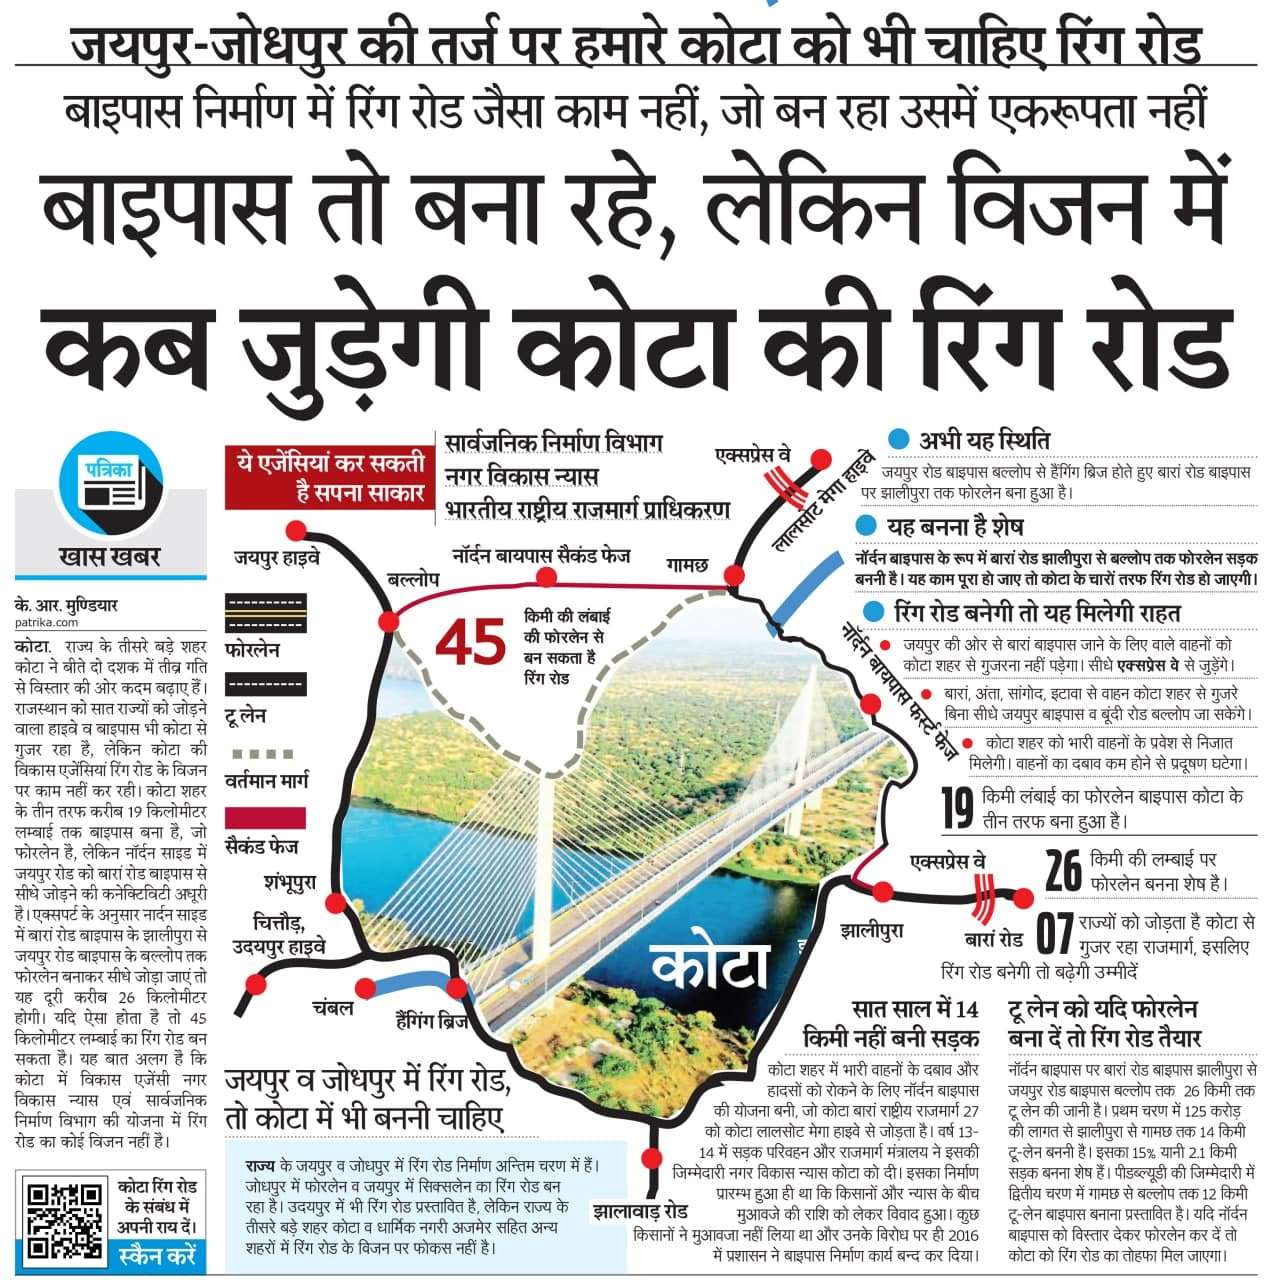 Good News : कोटा रिंग रोड बनने पर 18 किमी घटेगी जयपुर-बारां की दूरी